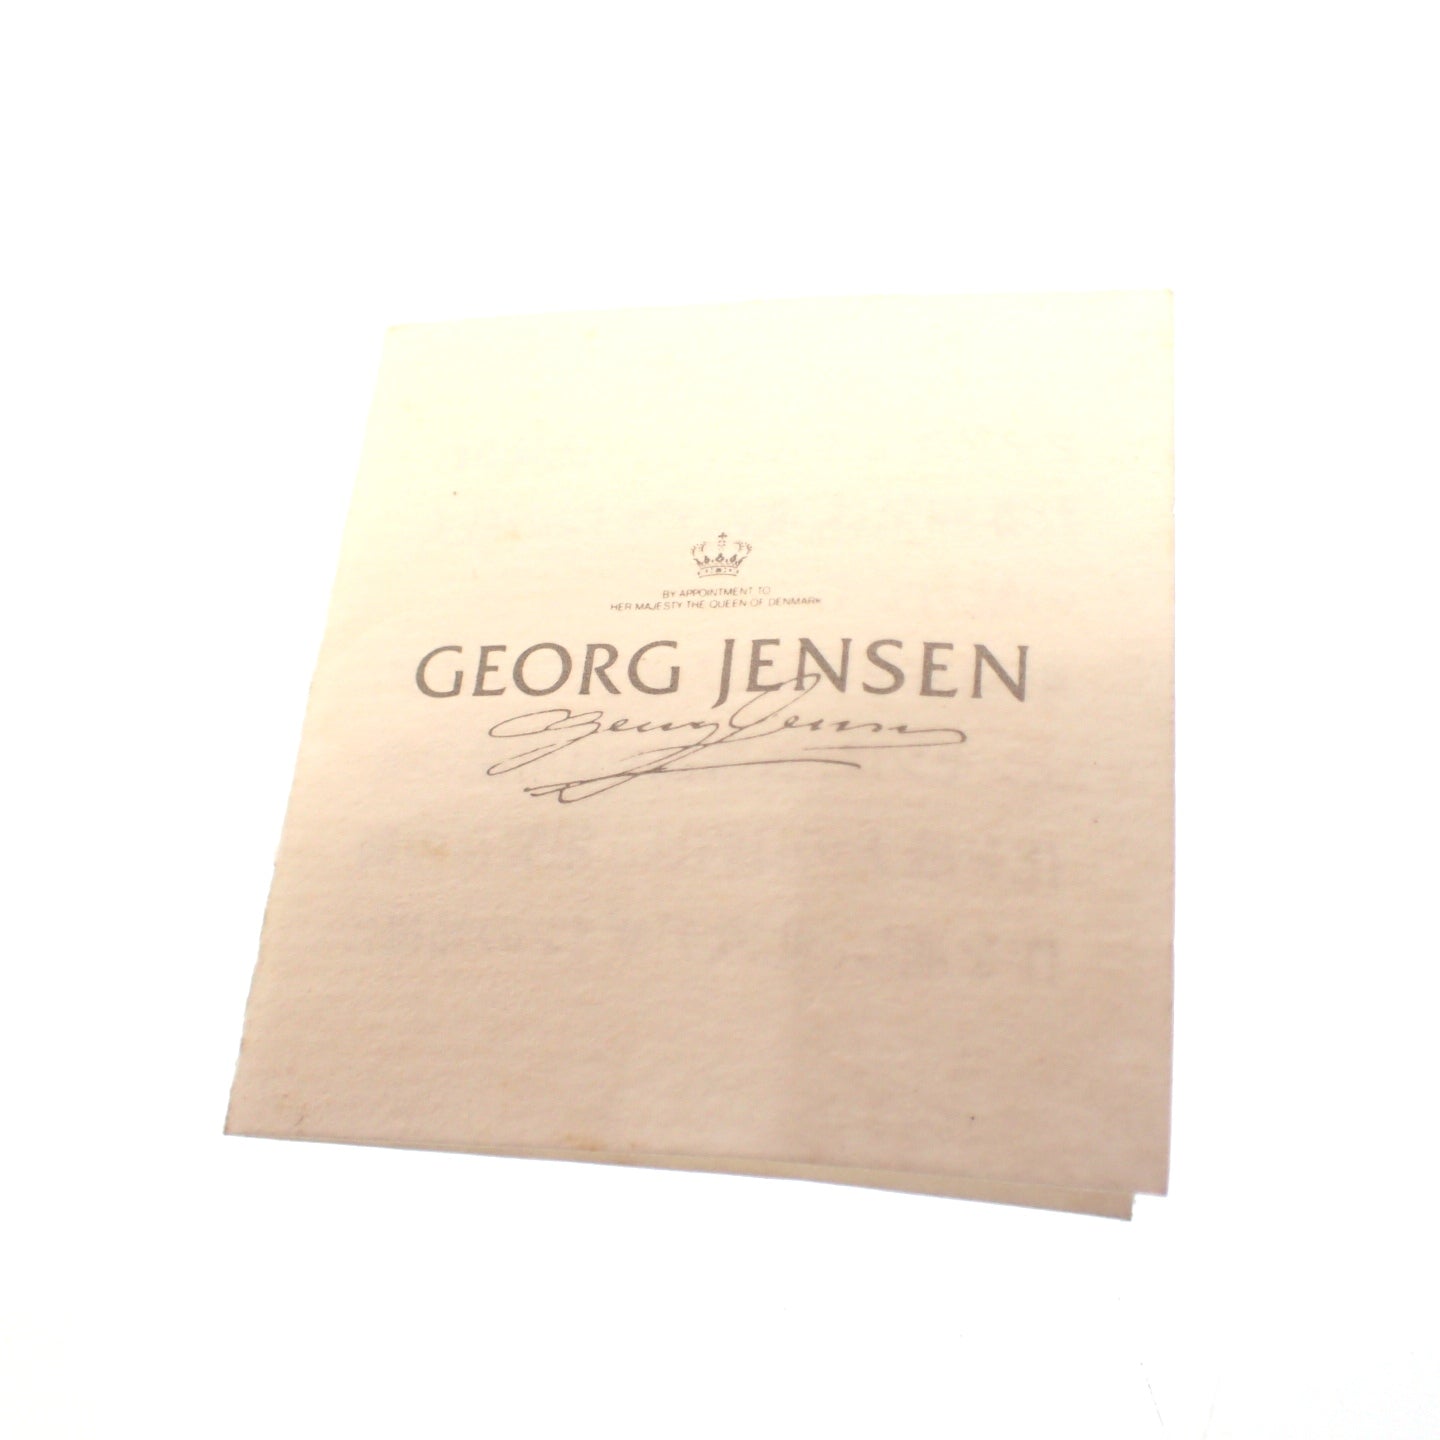 Georg Jensen 项链吊坠 1996 年 葡萄色 SV925 银 Georg Jensen [AFI12] [二手] 